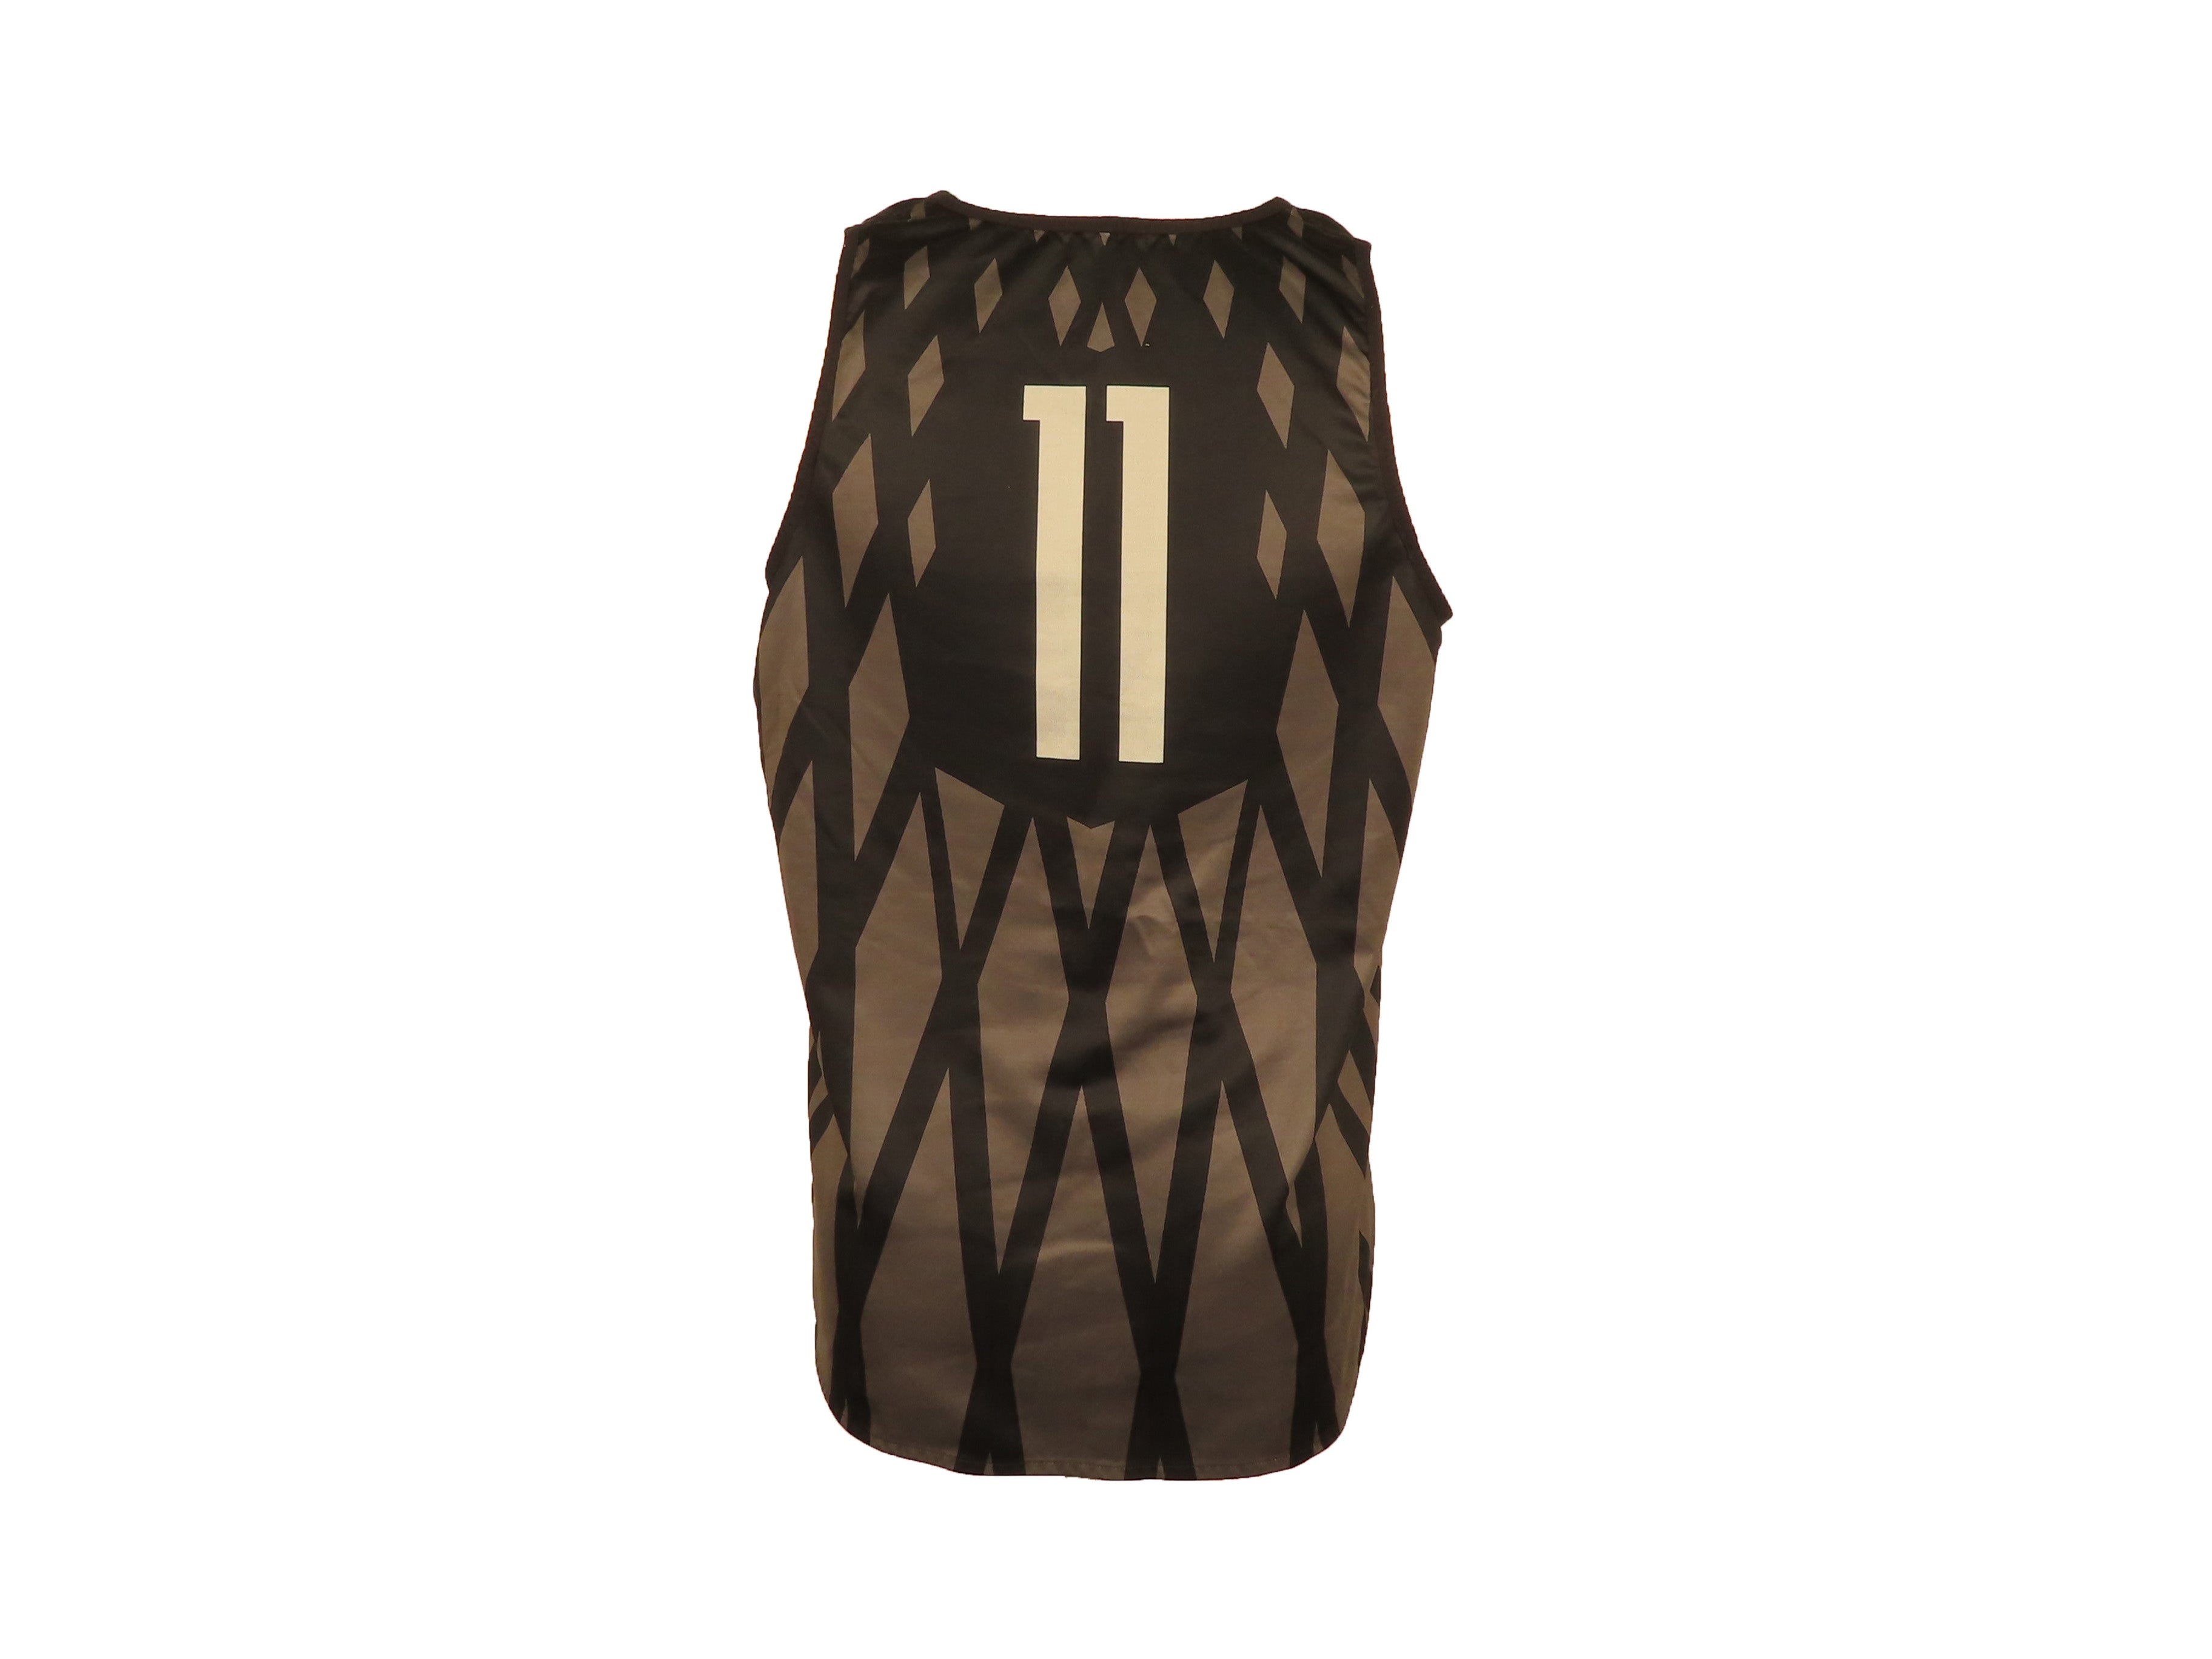 Nike Black & Gray Reversible Women's Basketball #11 Jersey Size XL